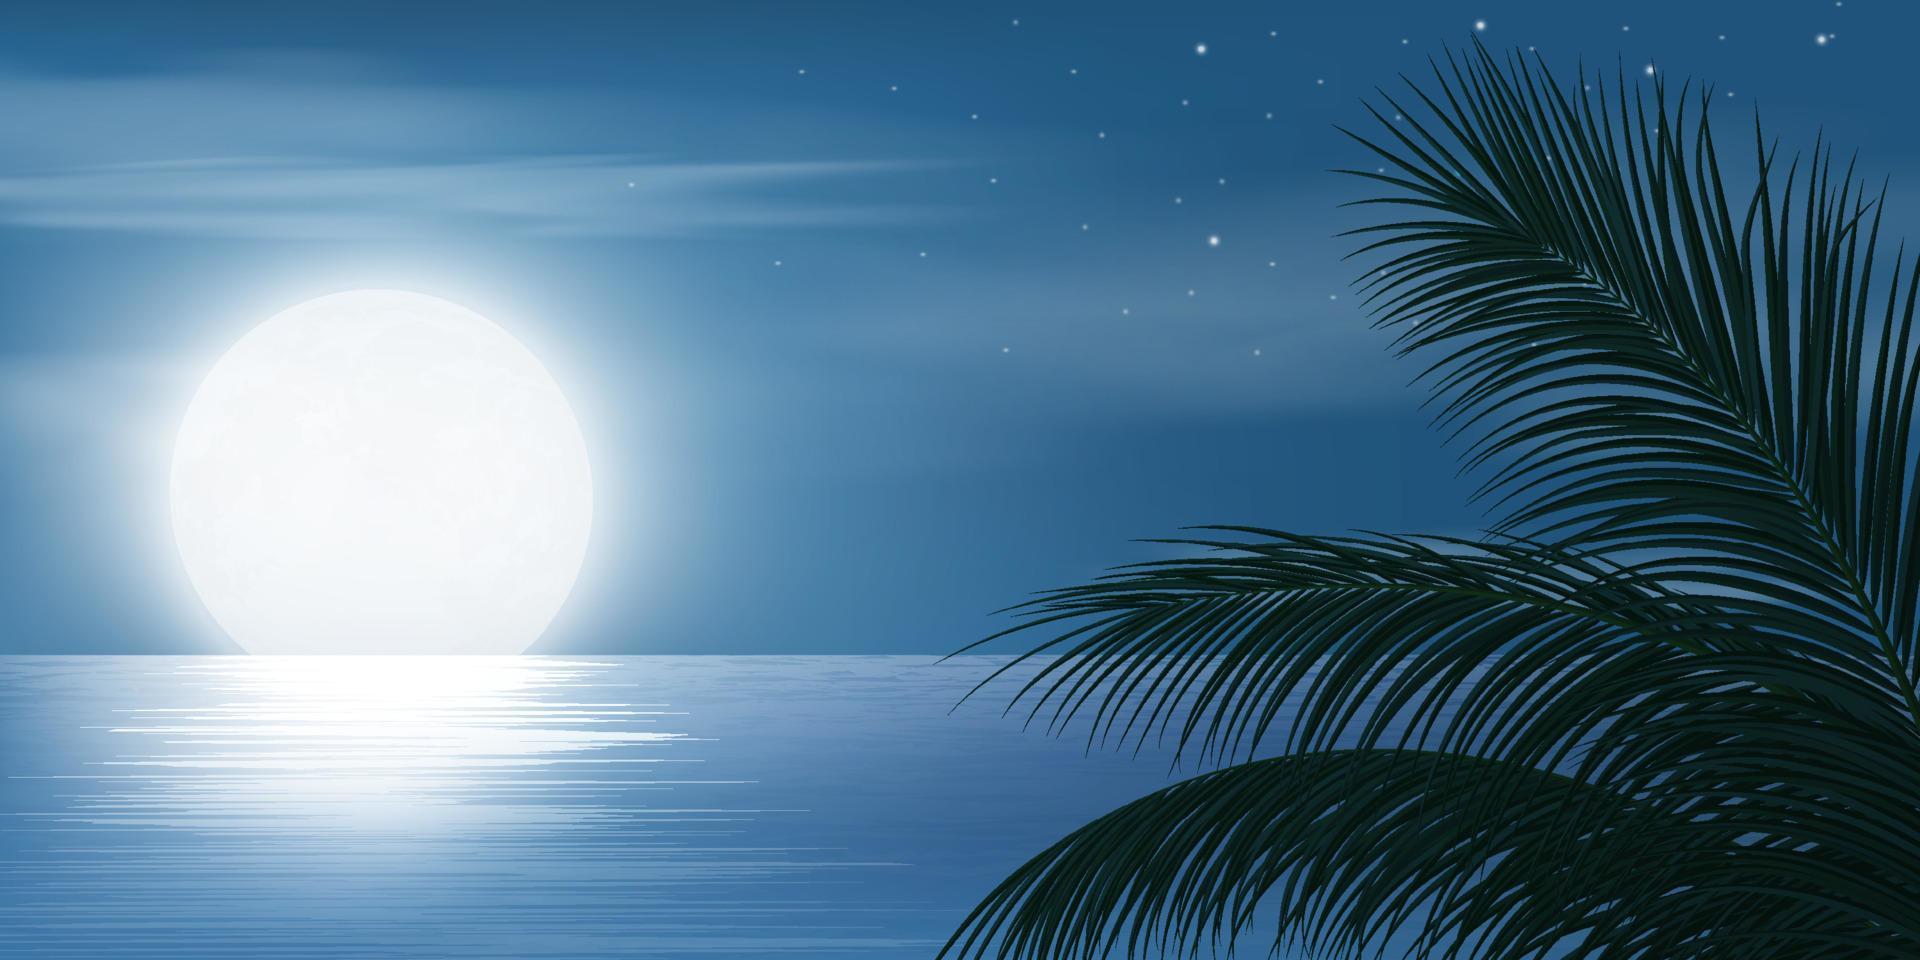 noche de luna llena en el cielo y estrellas en un lago tranquilo vector